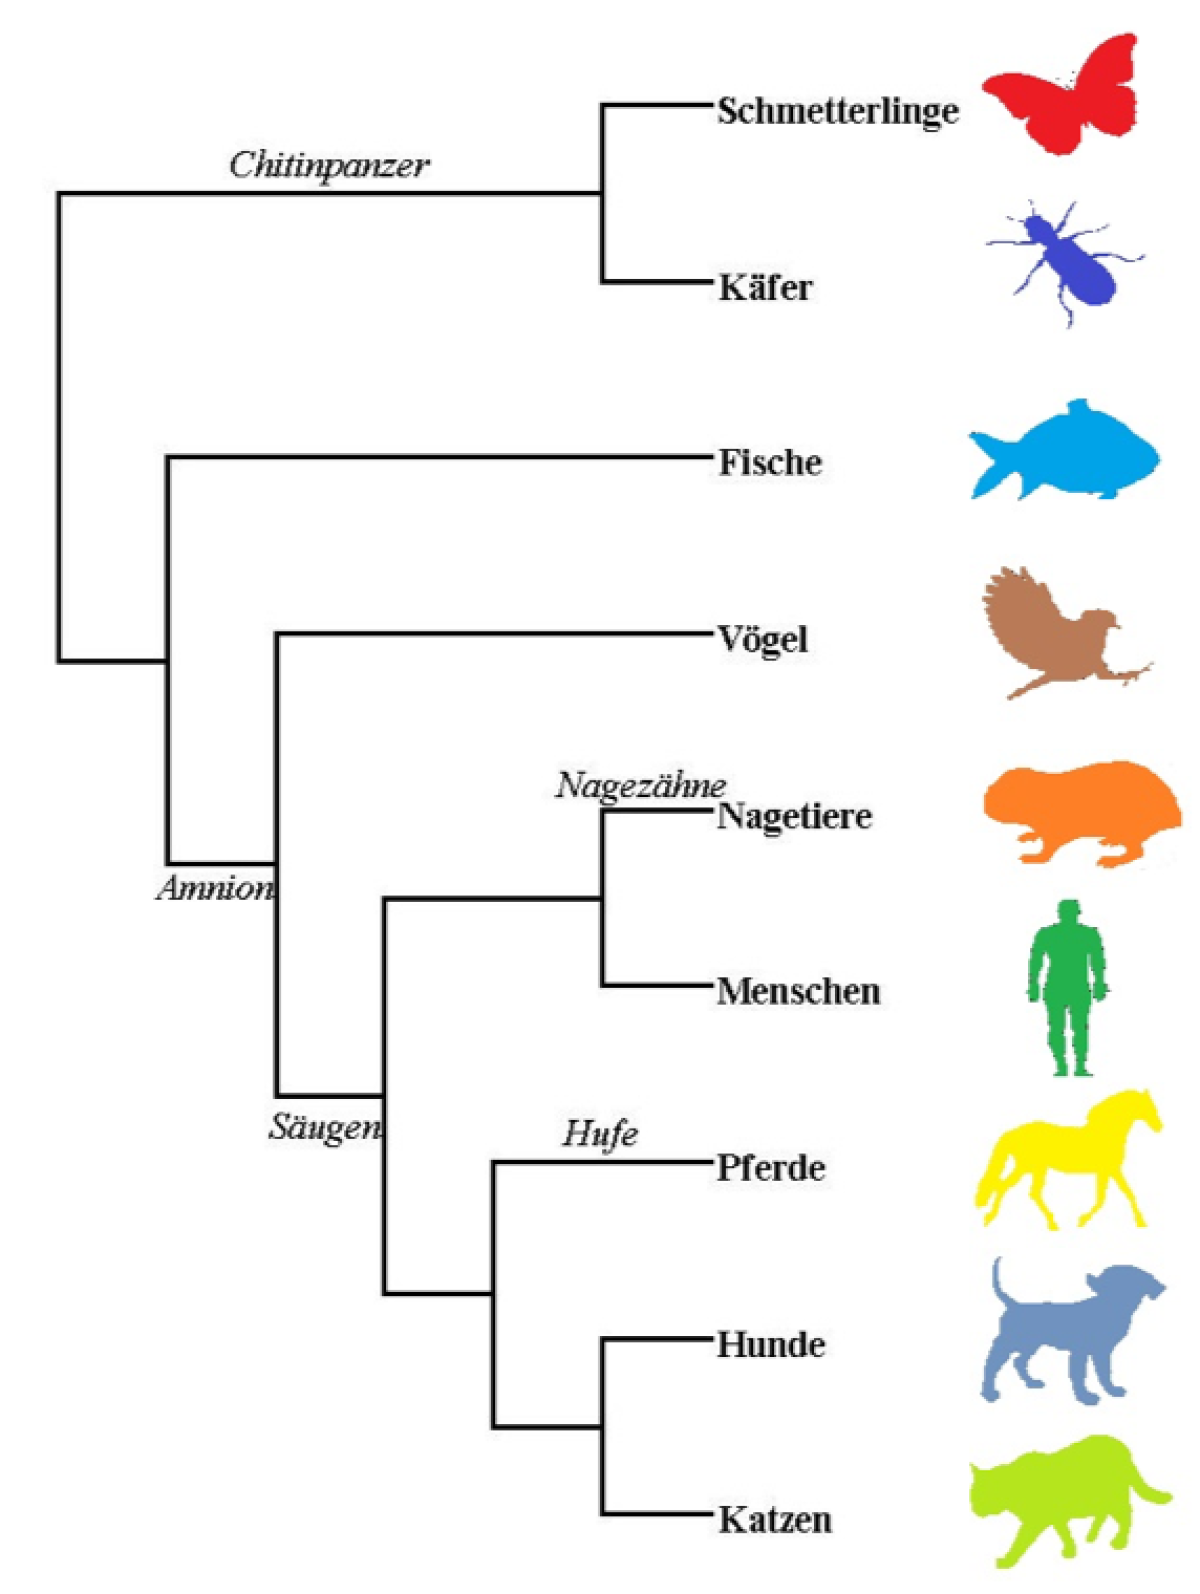 Evolutionärer Stammbaum